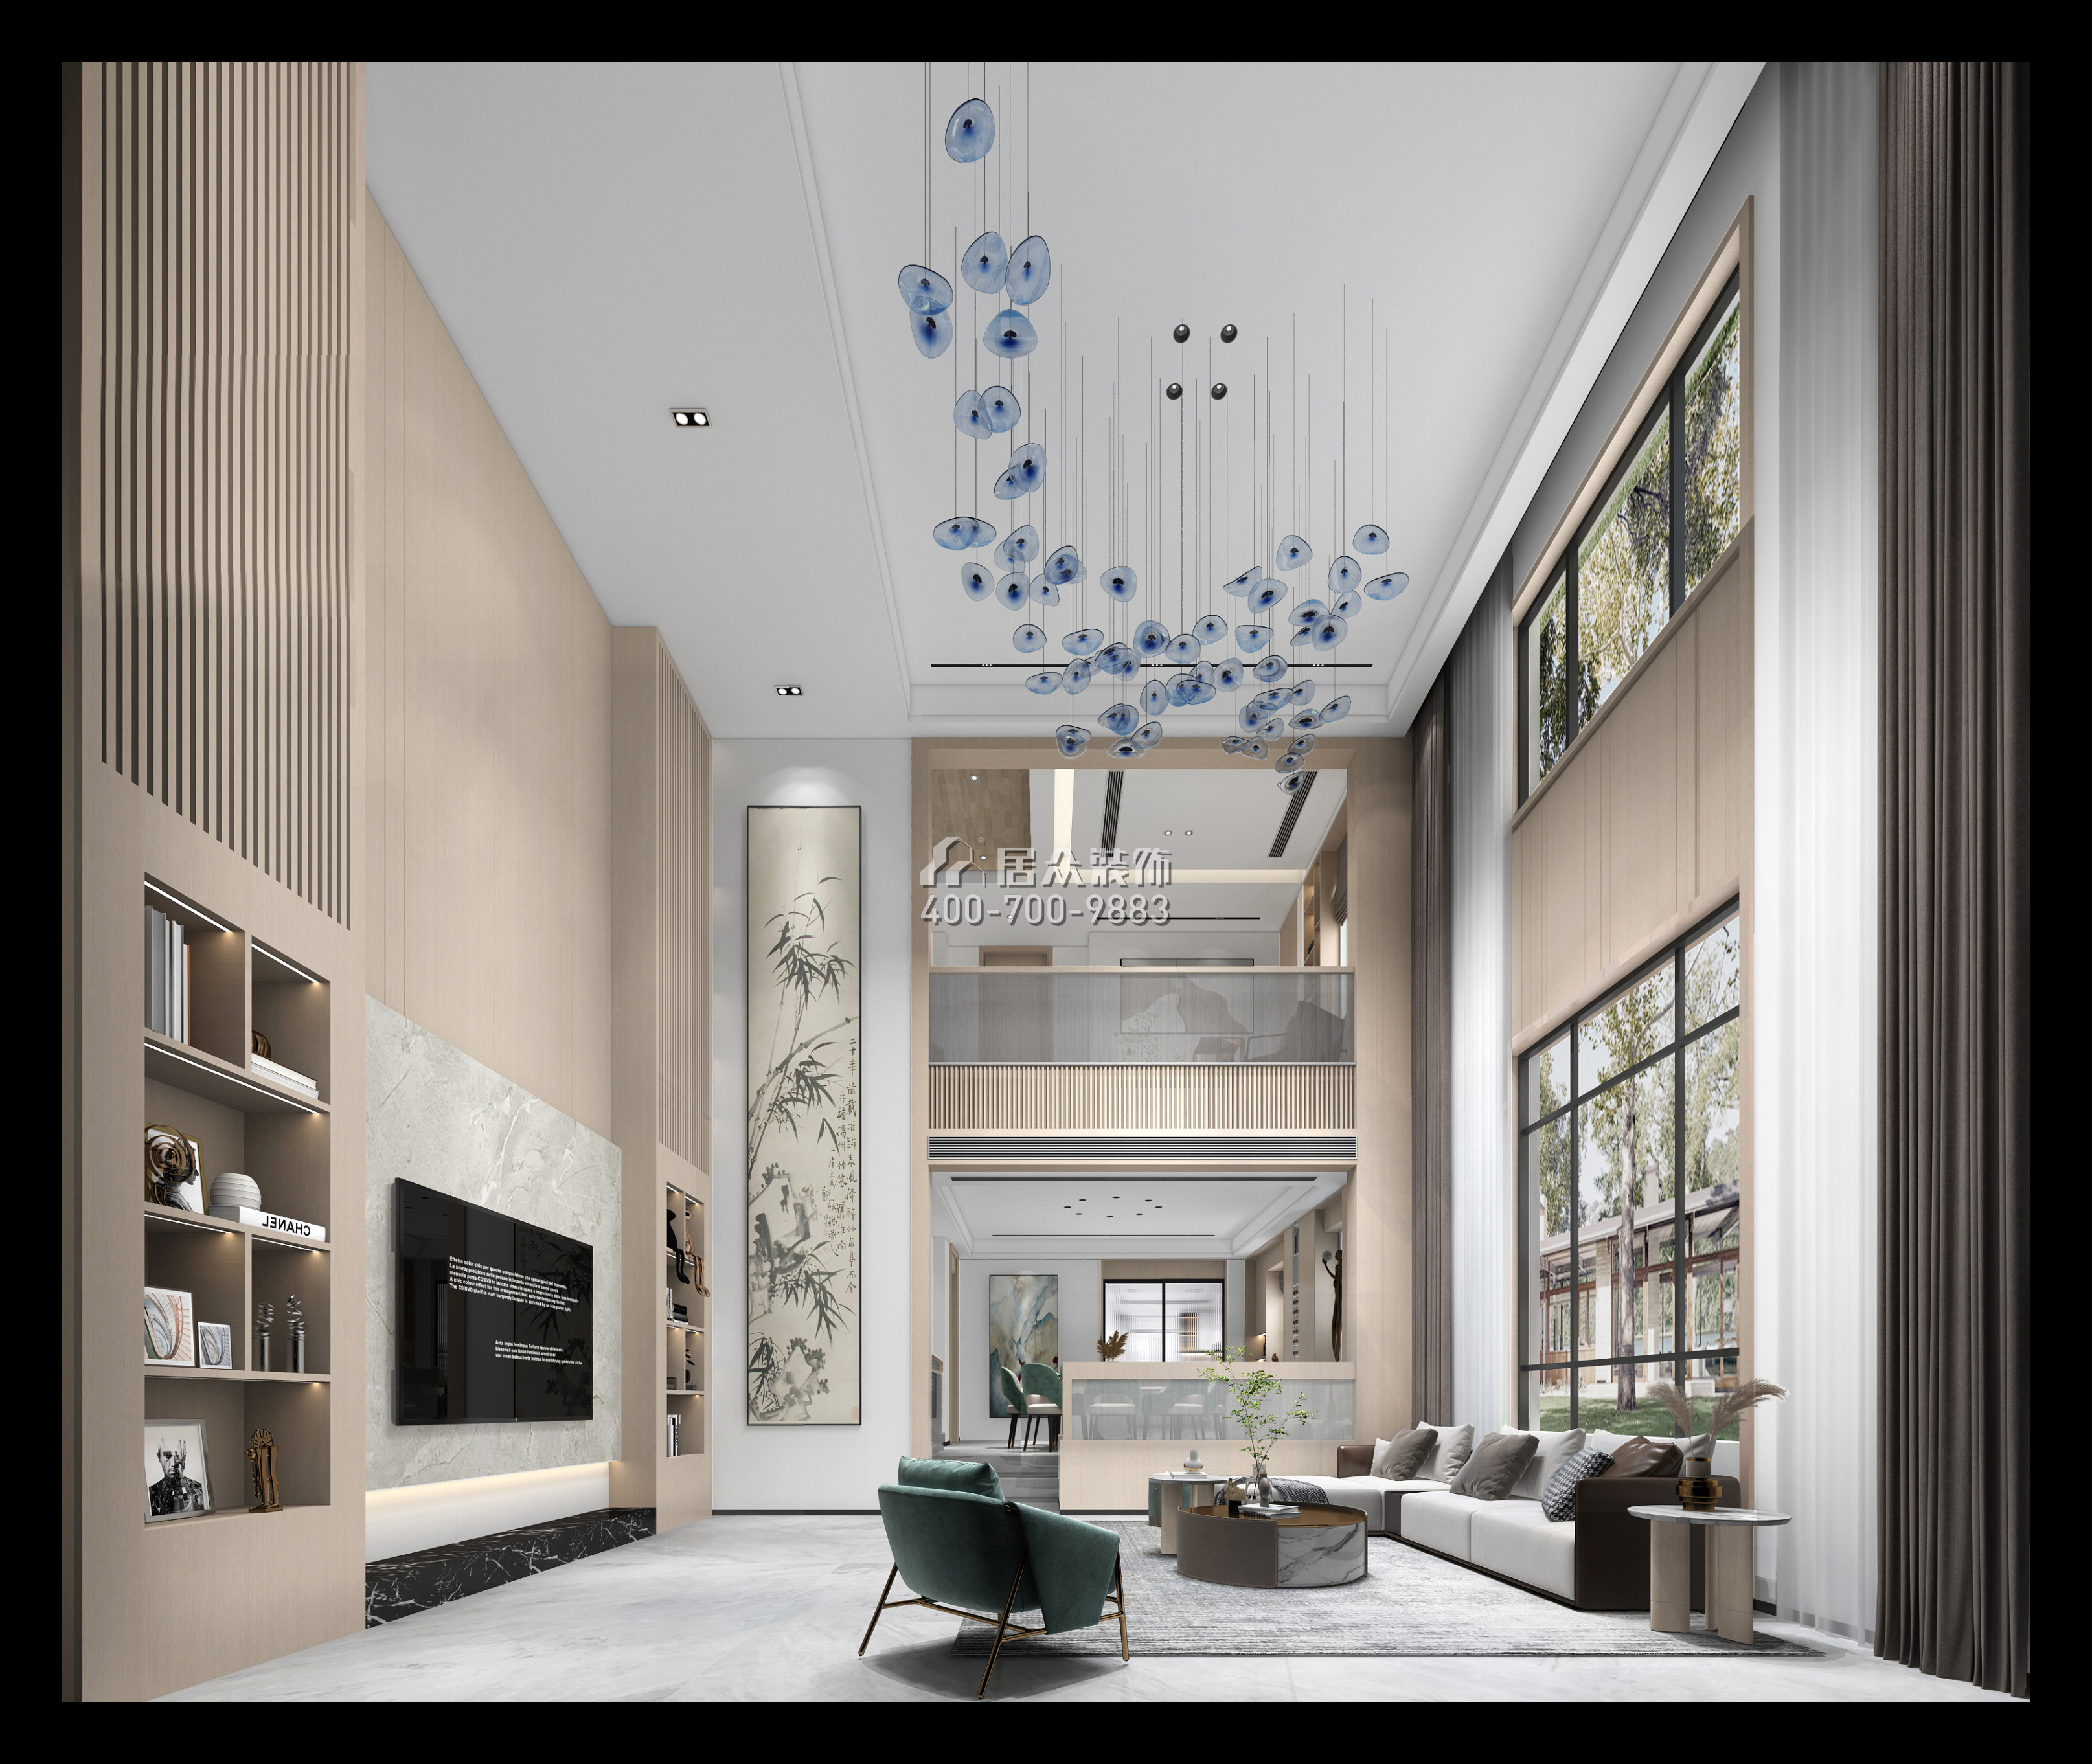 利豐中央公園320平方米現代簡約風格別墅戶型客廳裝修效果圖